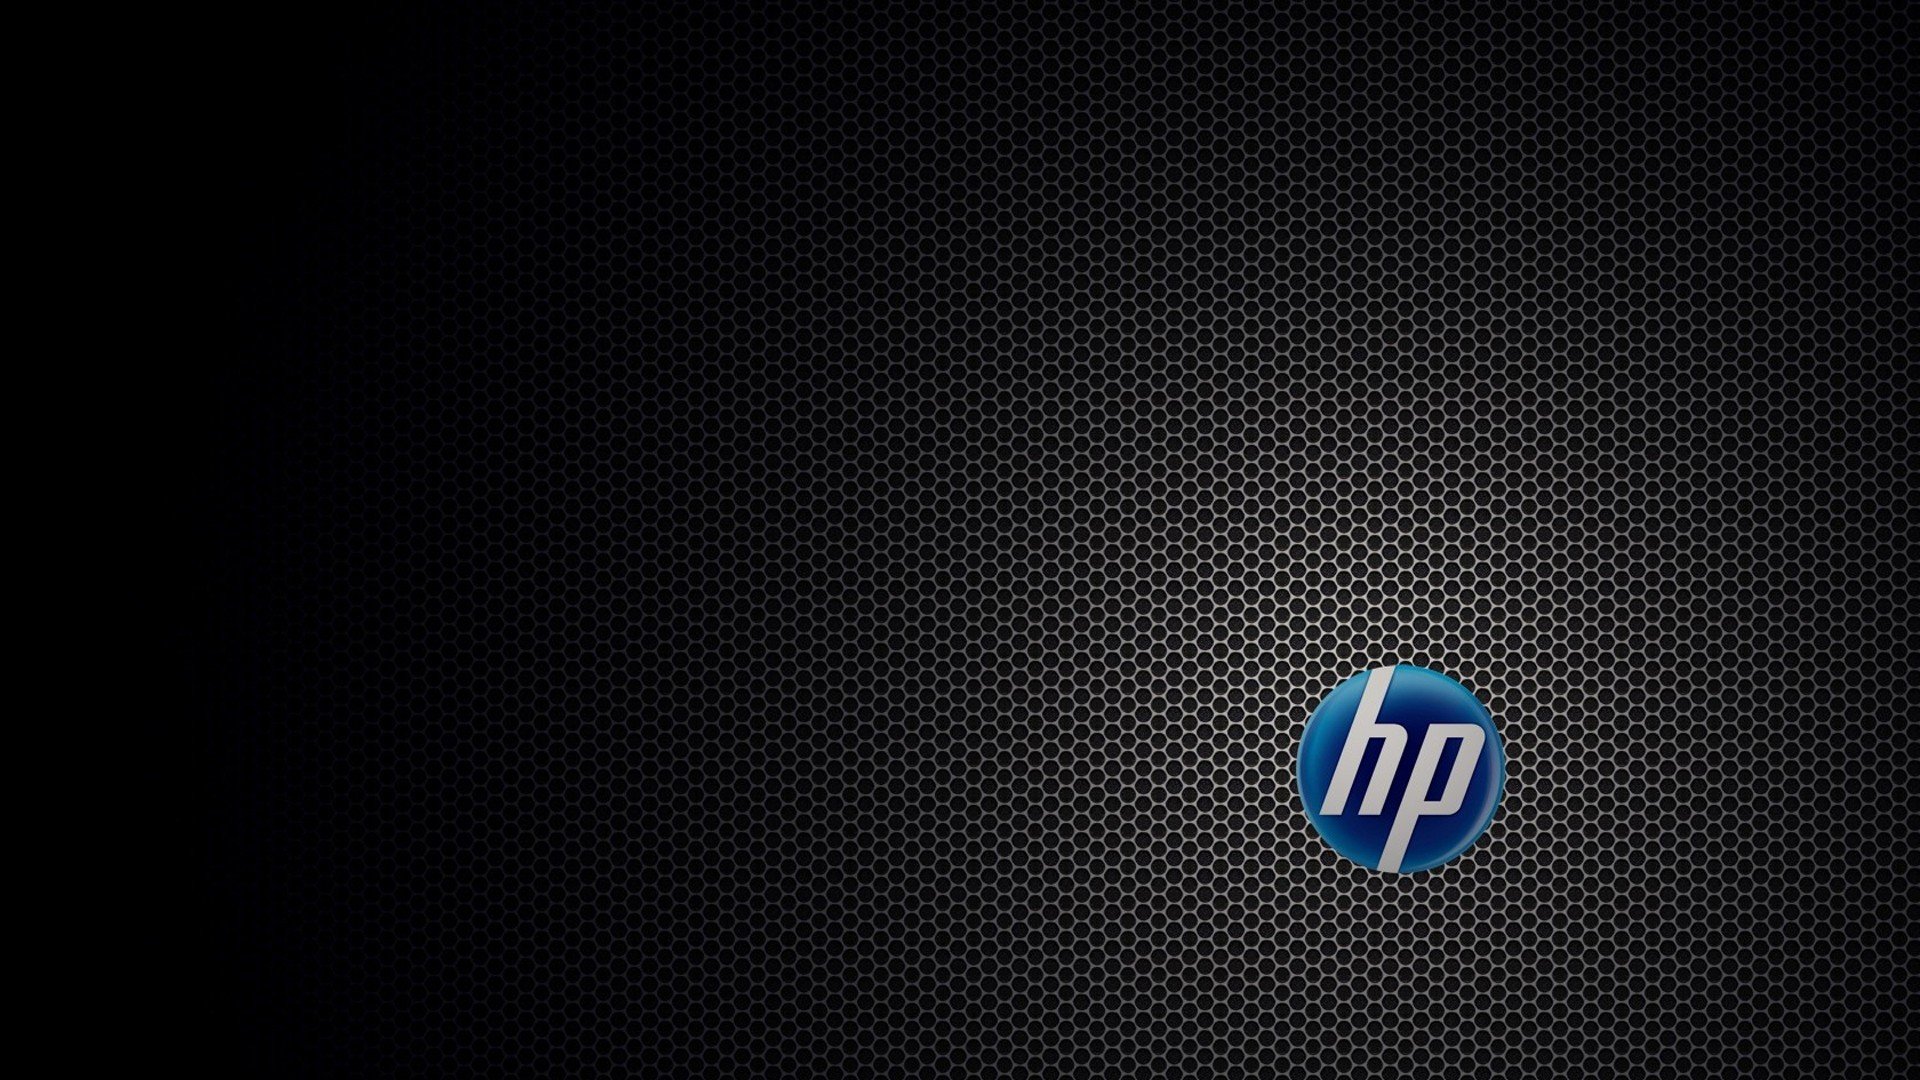 Hewlett Packard Puter Logo Wallpaper